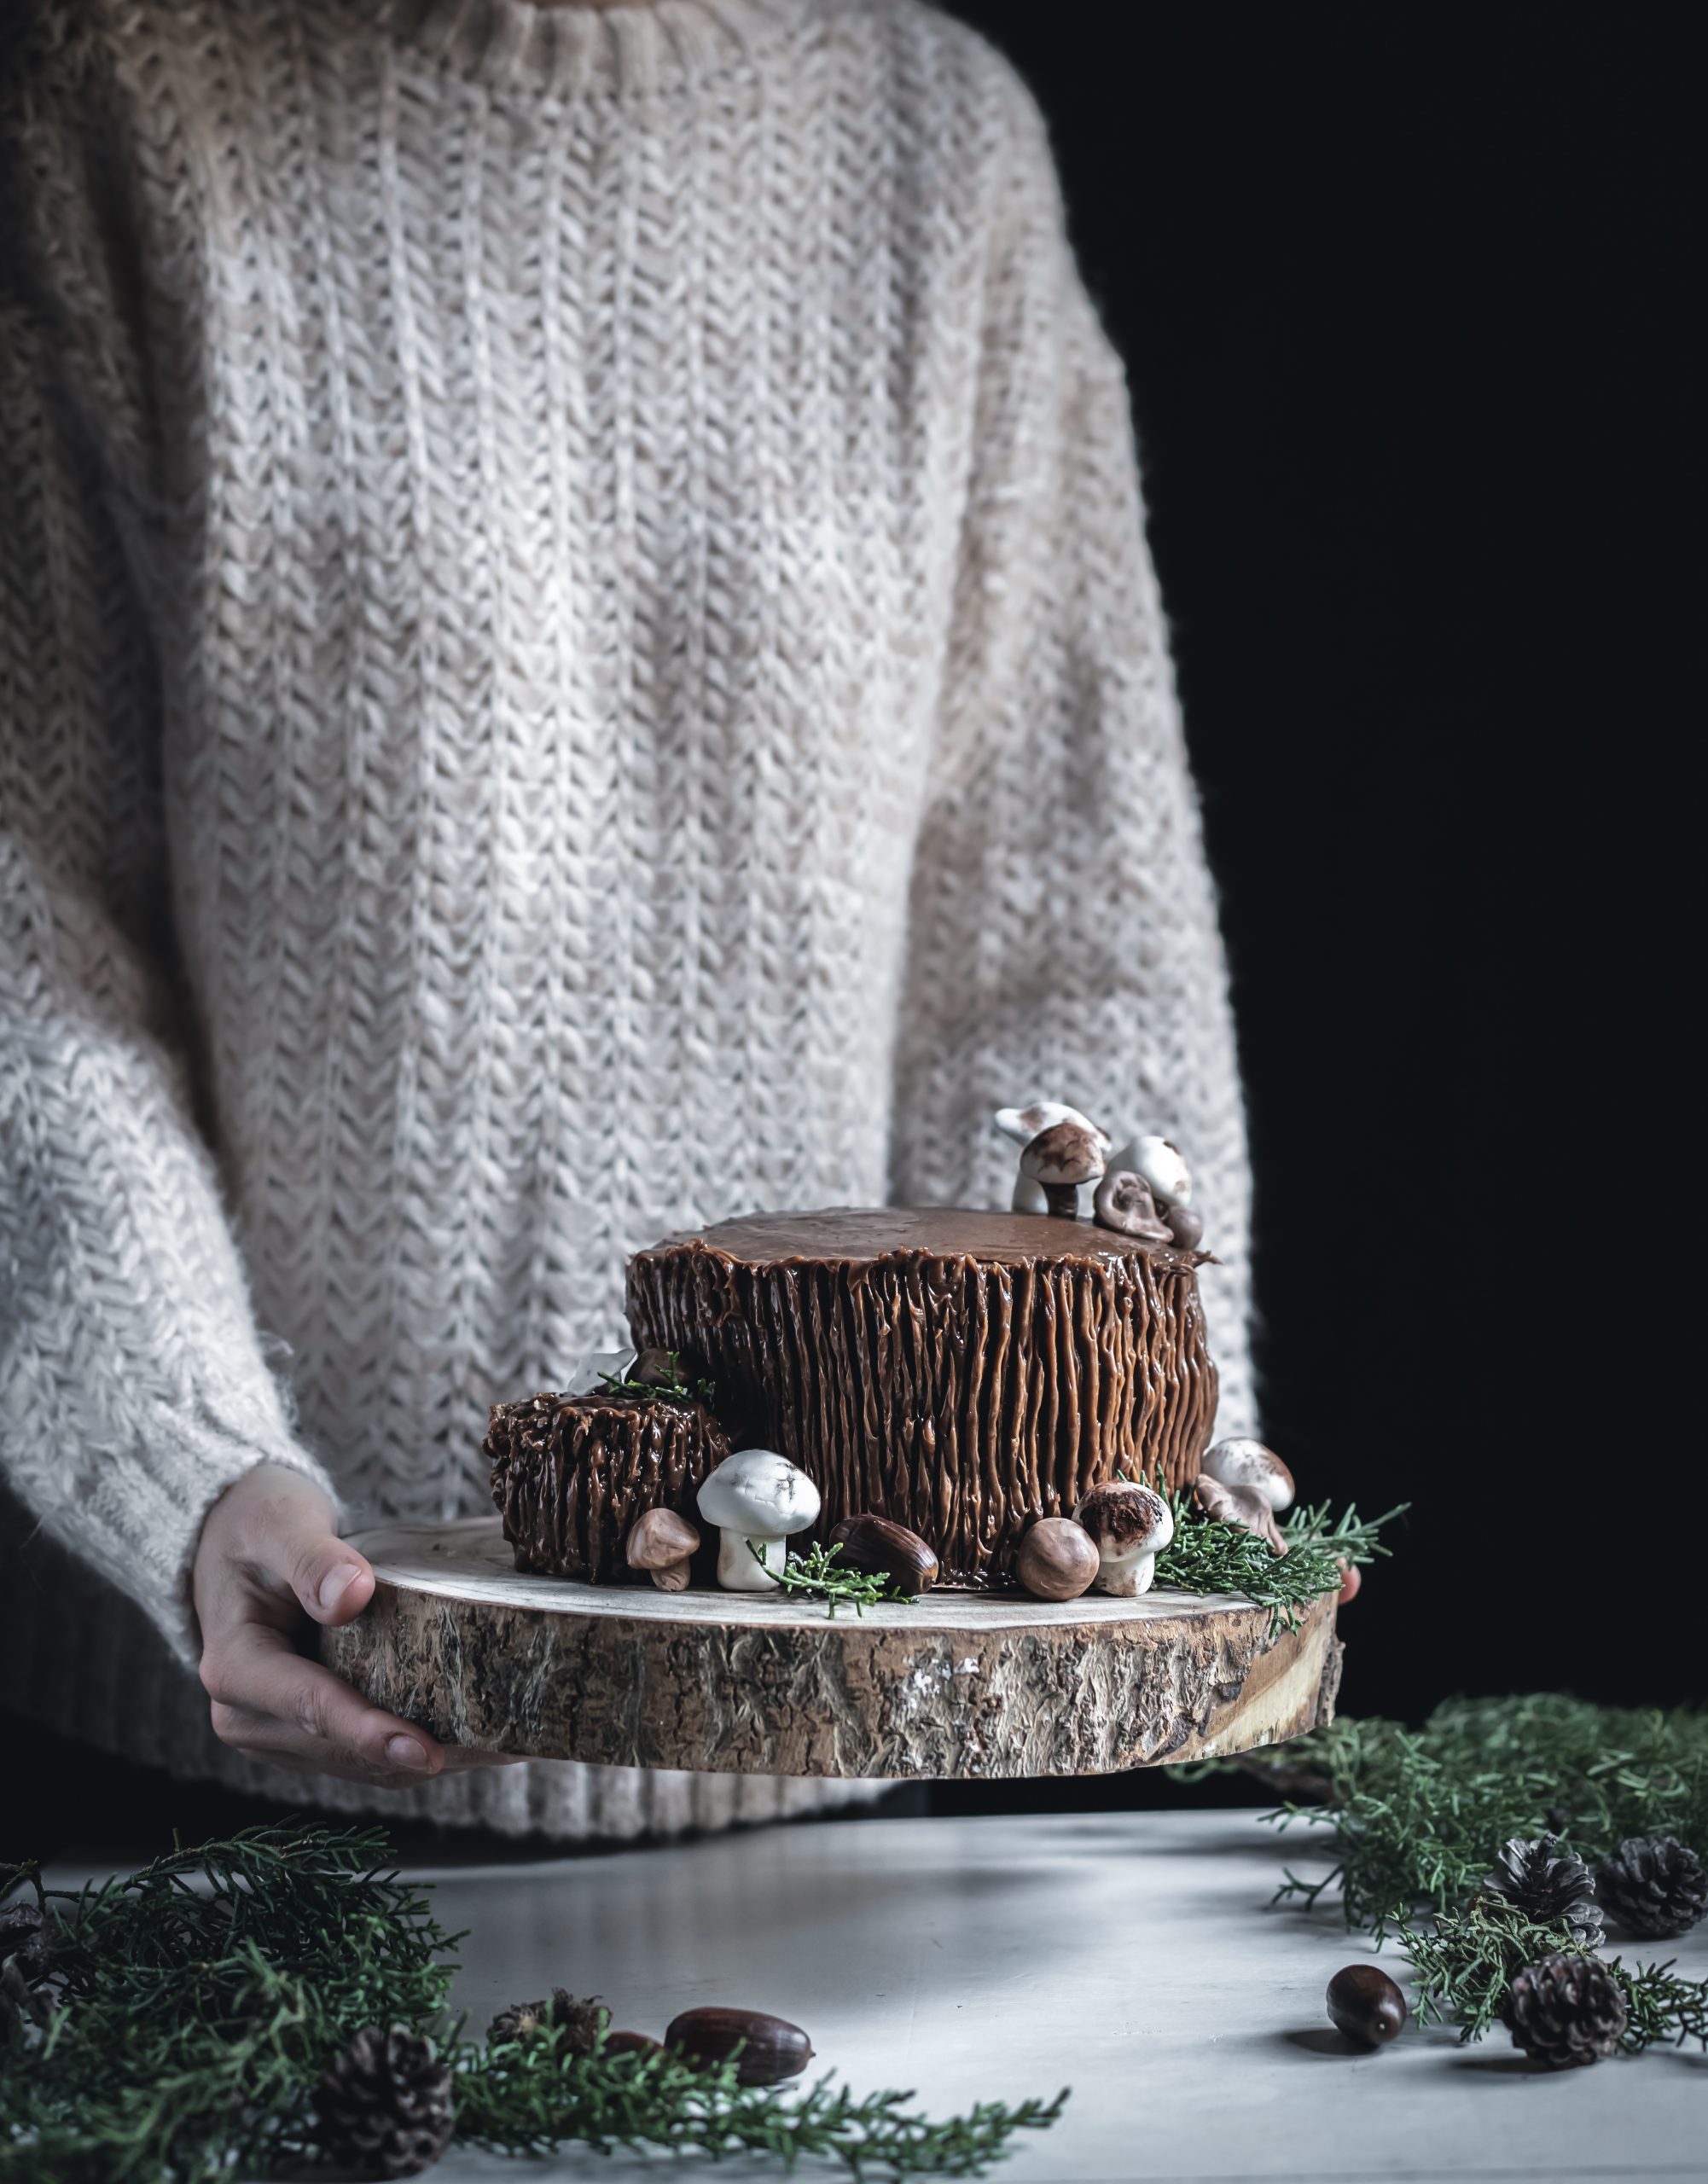 Chocolate Christmas log cake